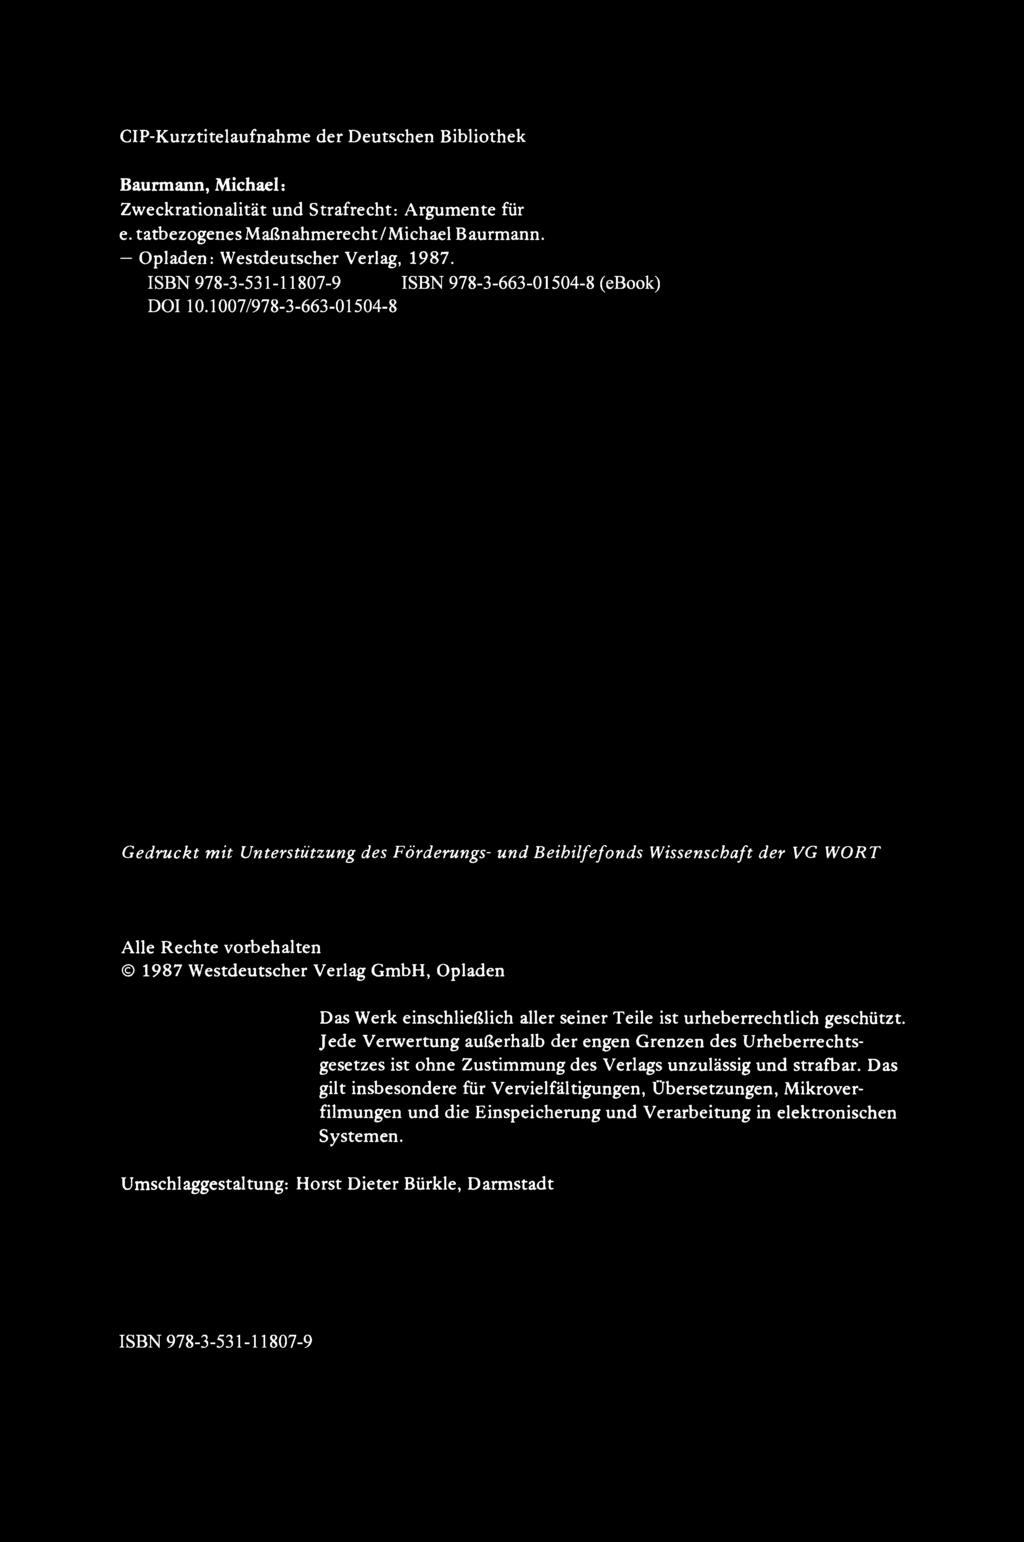 CIP-Kurztitelaufnahme der Deutschen Bibliothek Baurmann, Michael: Zweckrationalität und Strafrecht: Argumente für e. tatbezogenes Maßnahmerecht IMichael Baurmann.